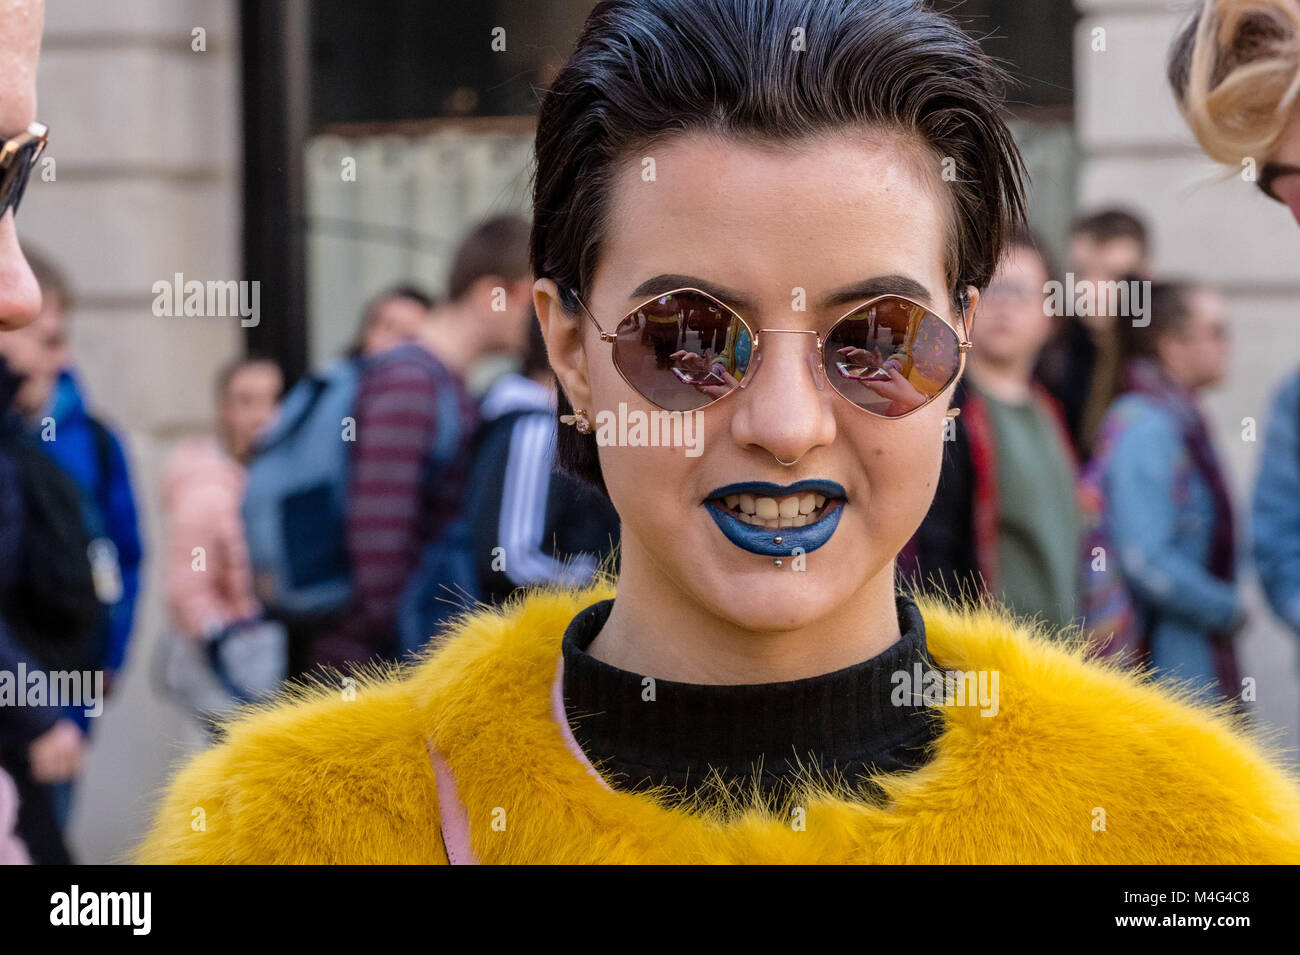 16 février 2018 Londres, les fashionistas en dehors de la Semaine de la mode et qu'ils sont partisans de la mode ou les jeunes designers essayant d'publiscies leurs conceptions. Crédit : Ian Davidson/Alamy Live News Banque D'Images